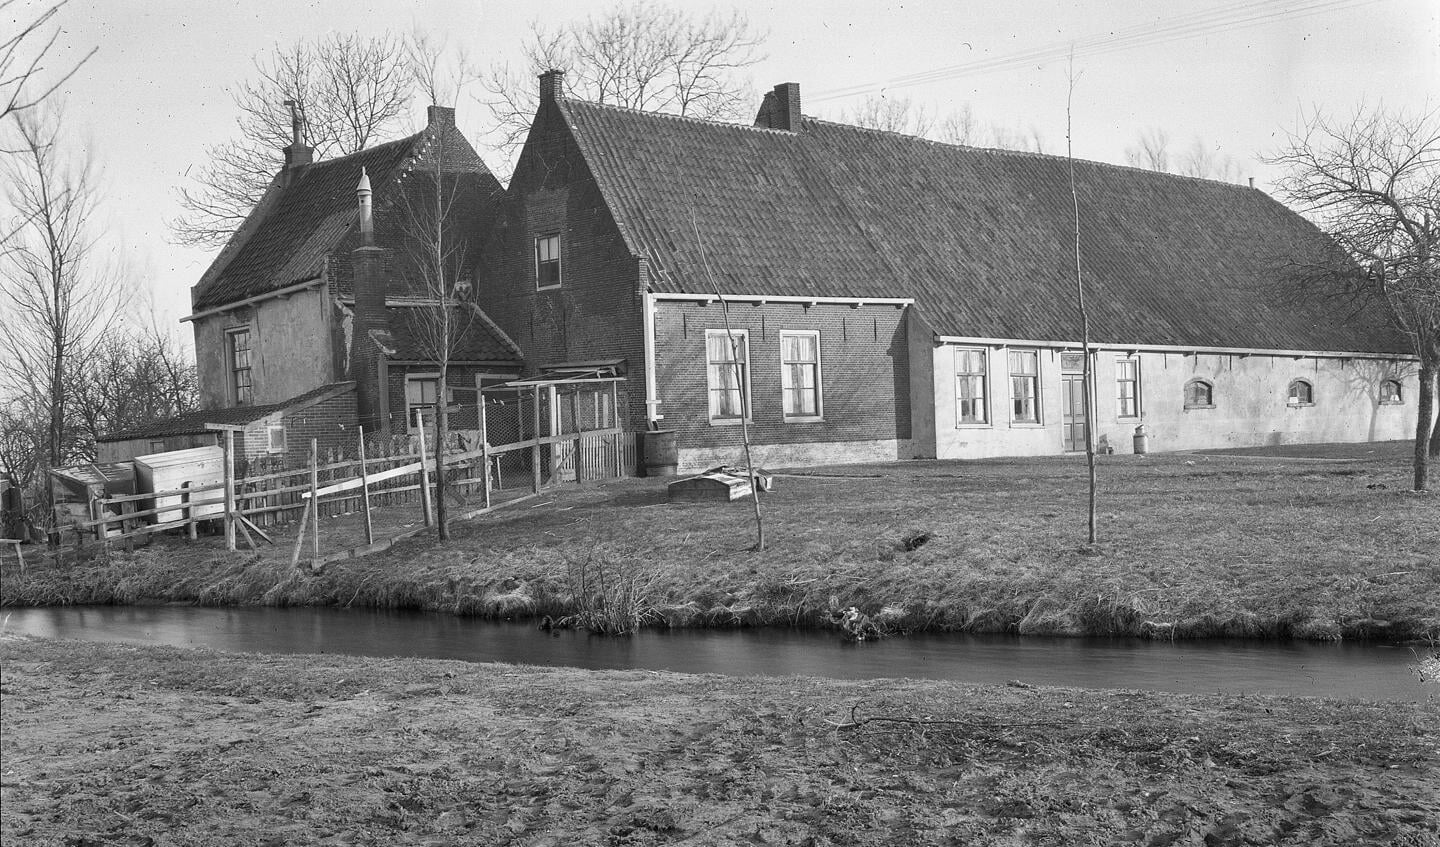 Boerderij Landzigt, oftewel boerderij Samsom, is gesloopt in de jaren ’60. Hier is in 2015 het wijkje Leithonpark gebouwd.